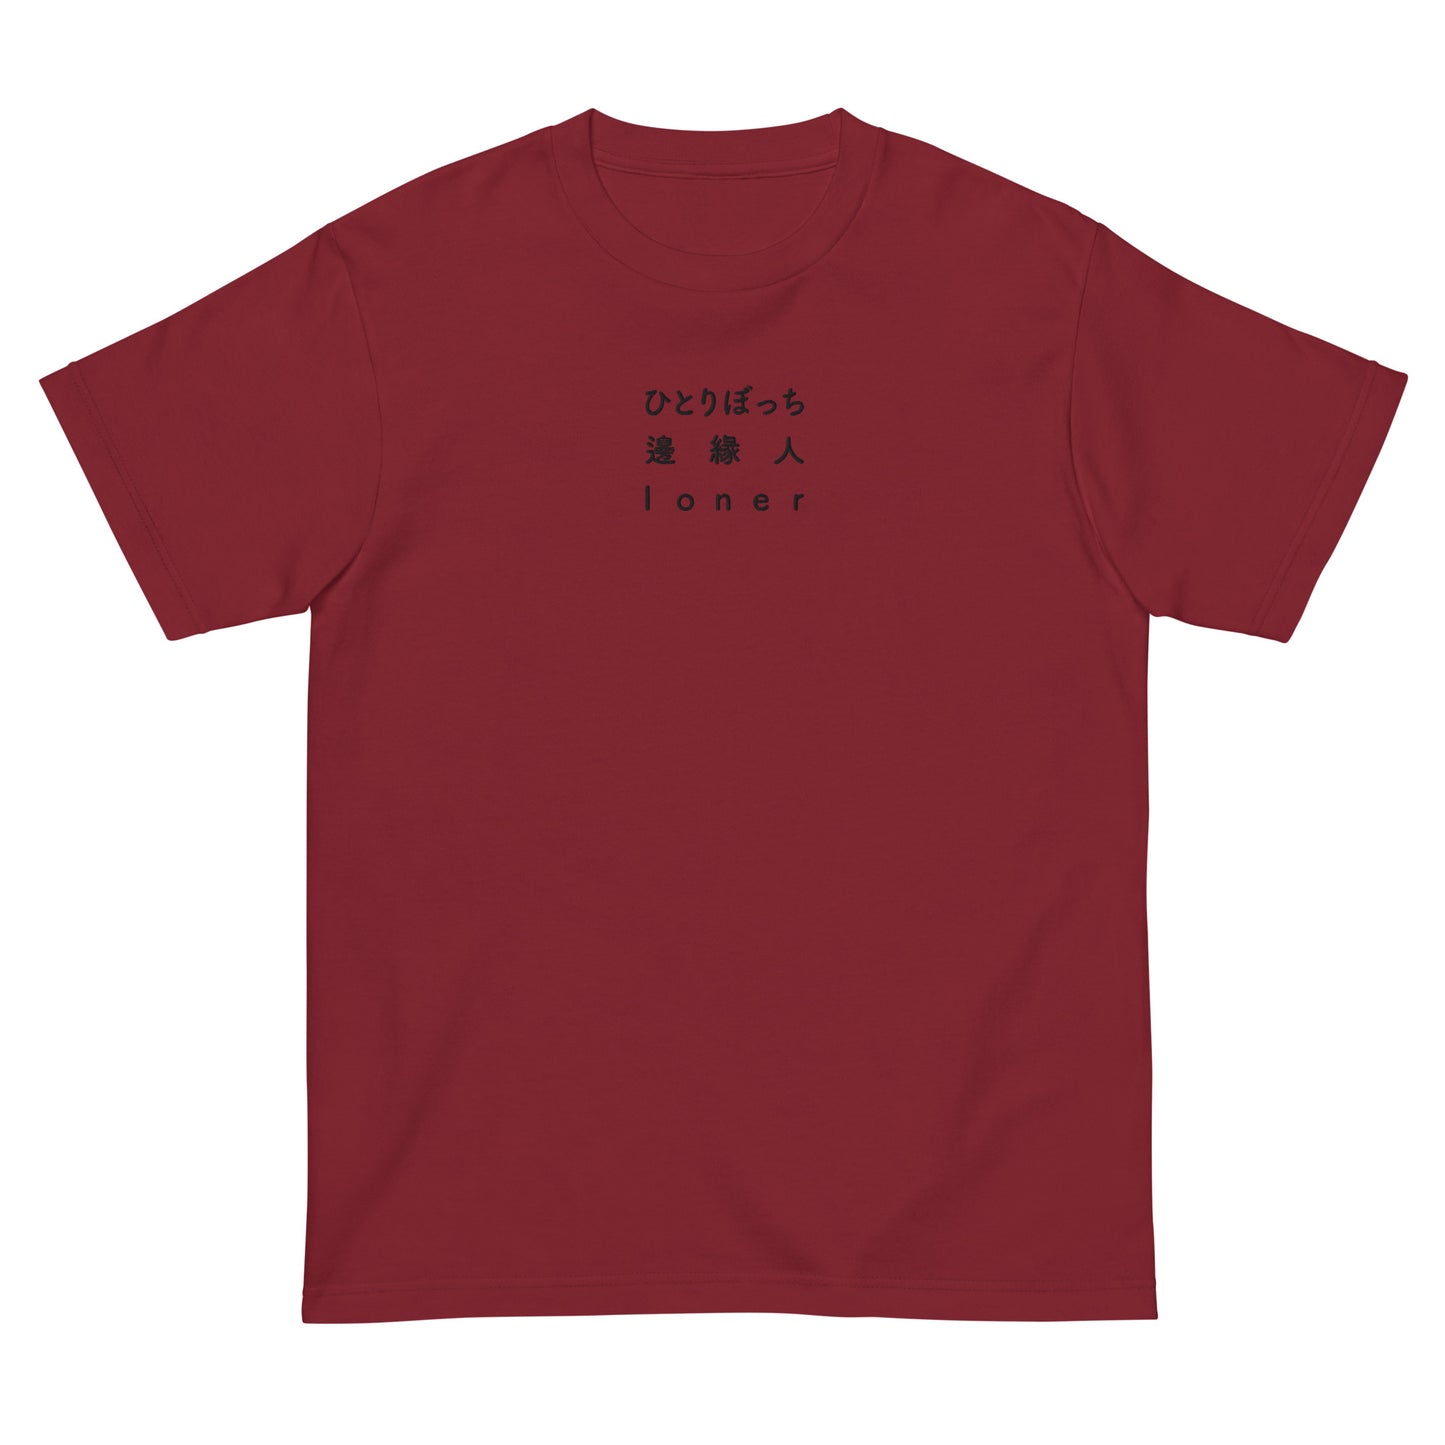 Loner Japanese & Chinese - Embroidery Unisex T-Shirt 100% Cotton- UNIWARI